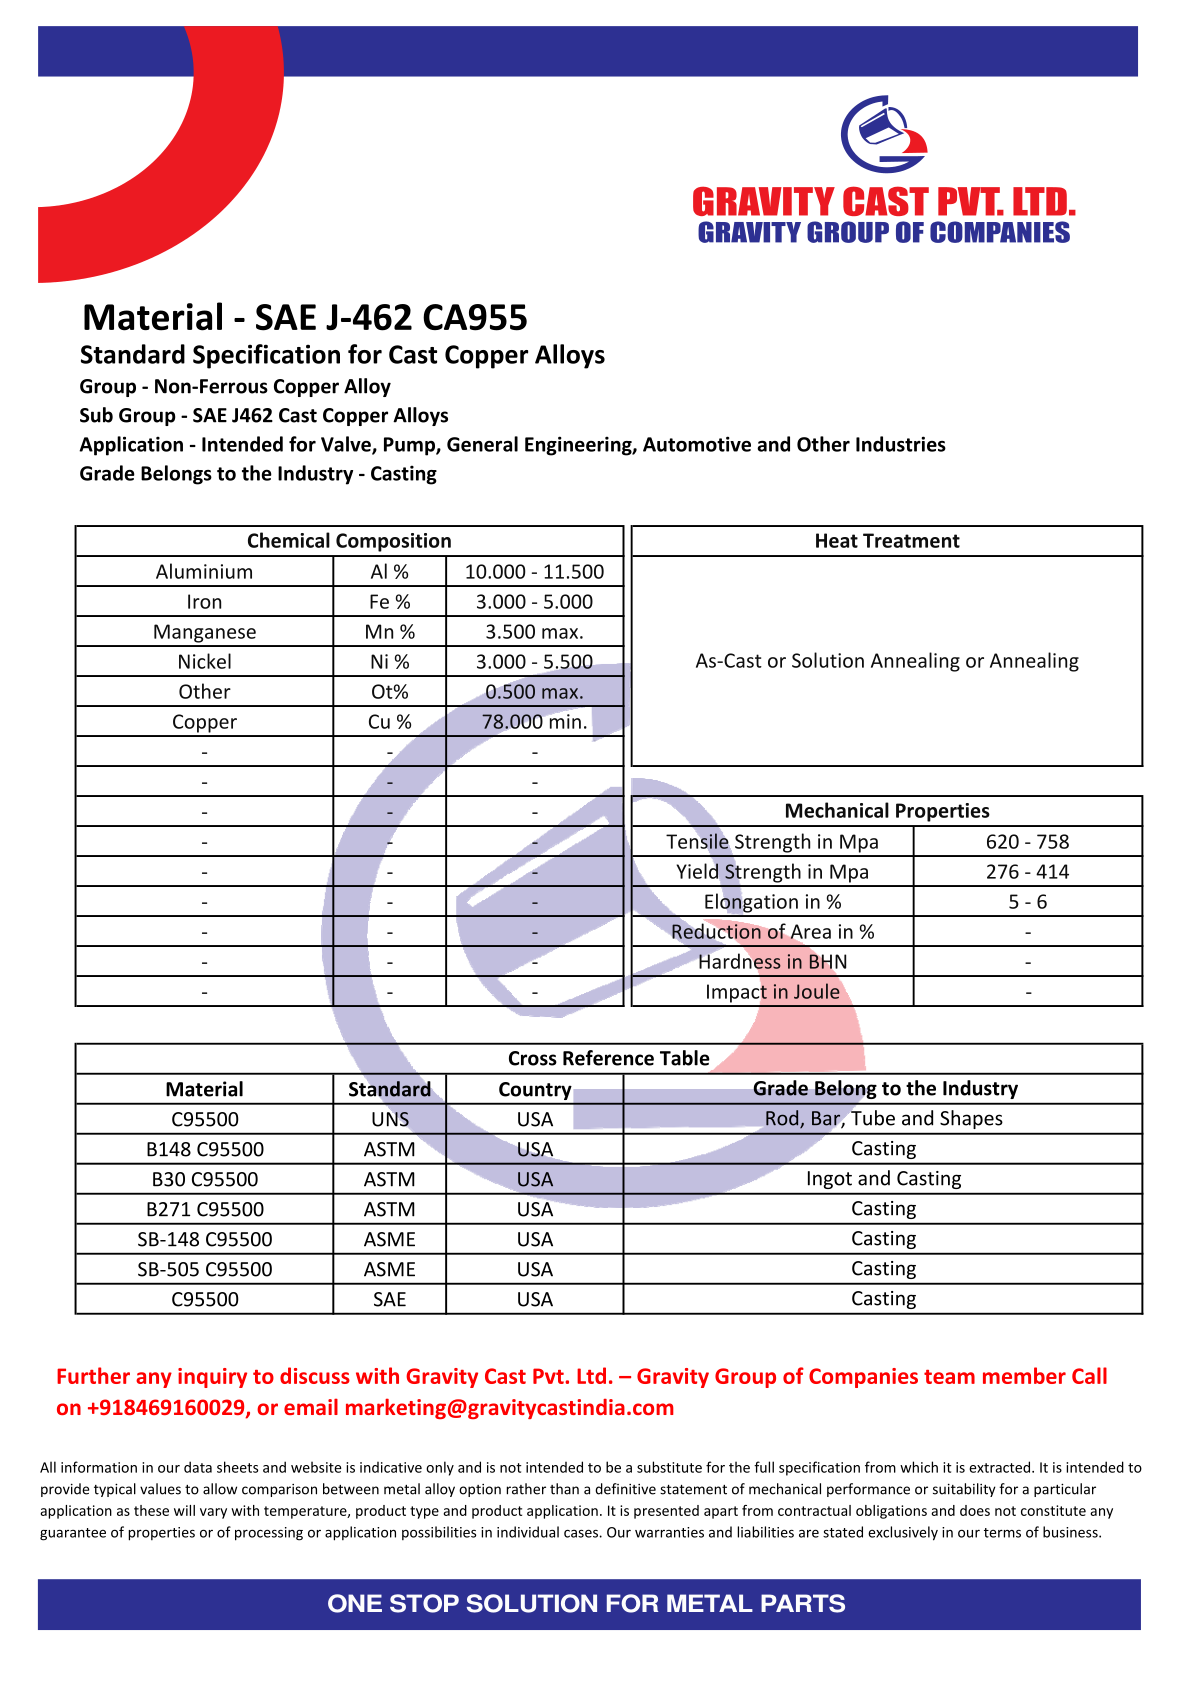 SAE J-462 CA955.pdf